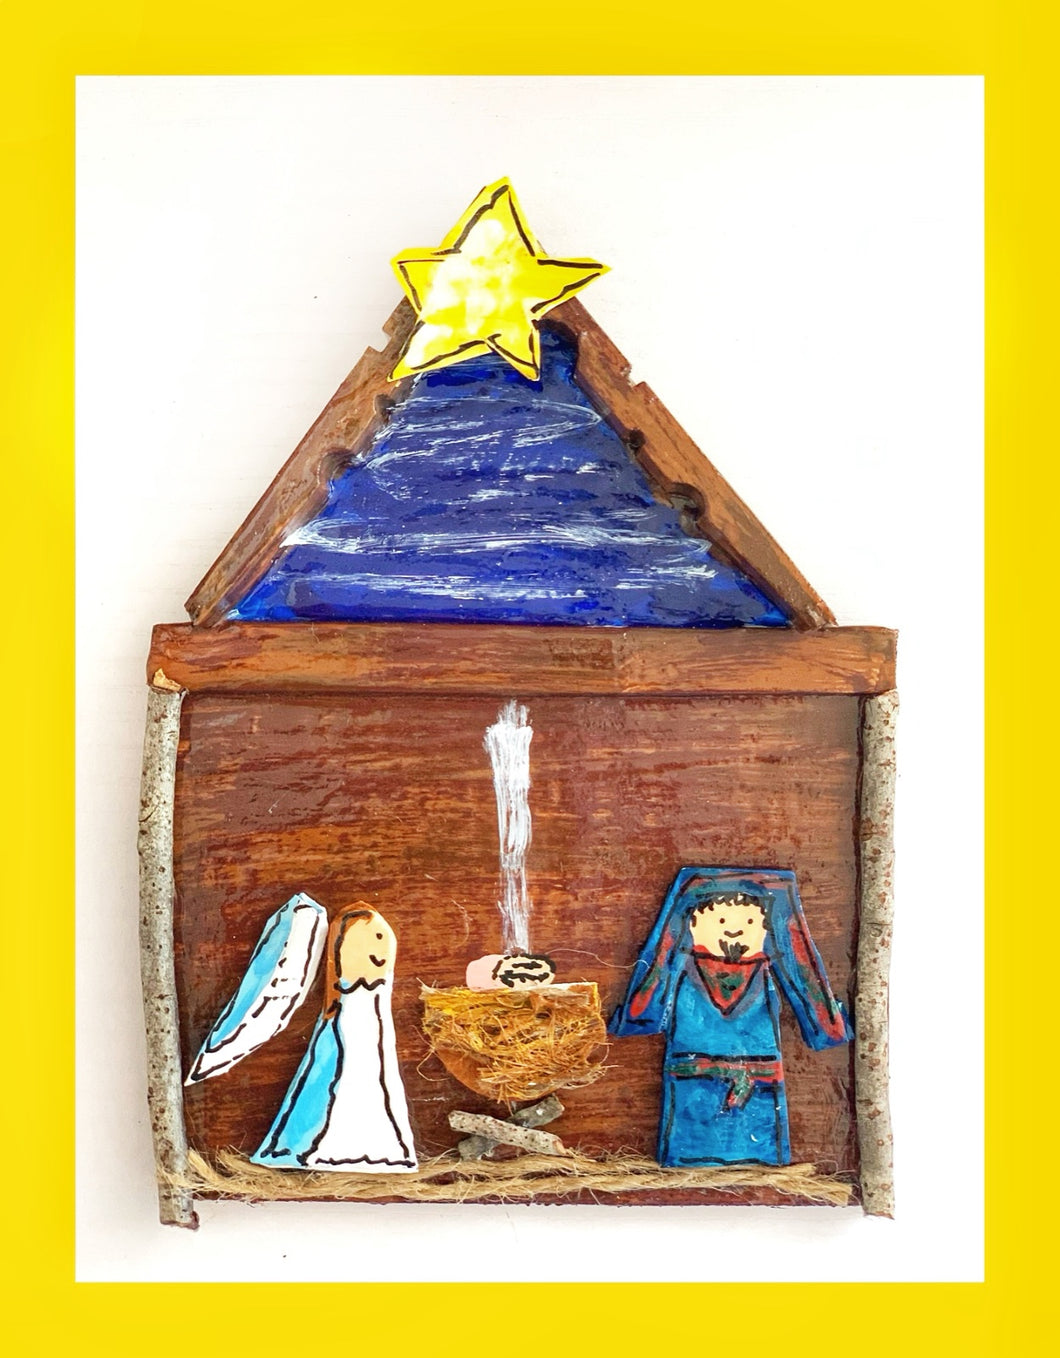 Nativity Ornament (Joseph in blue)